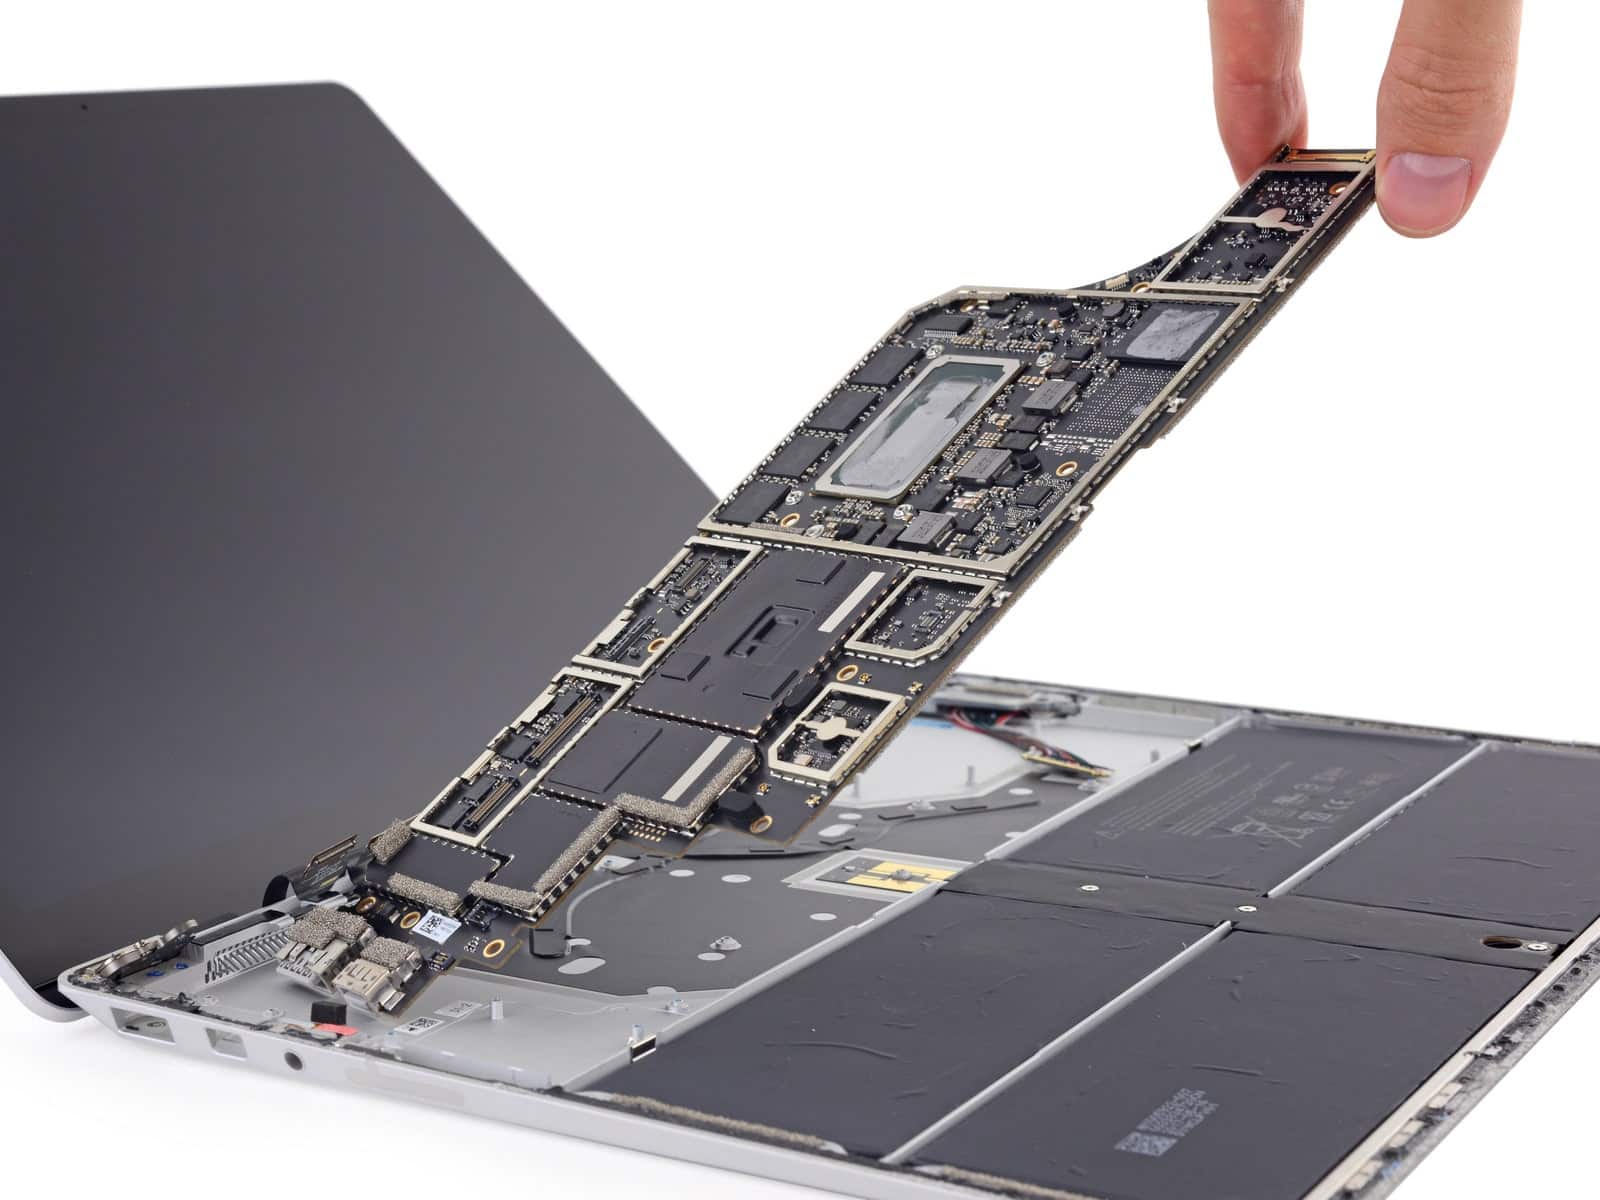 Microsoft Surface repair - laptop opened